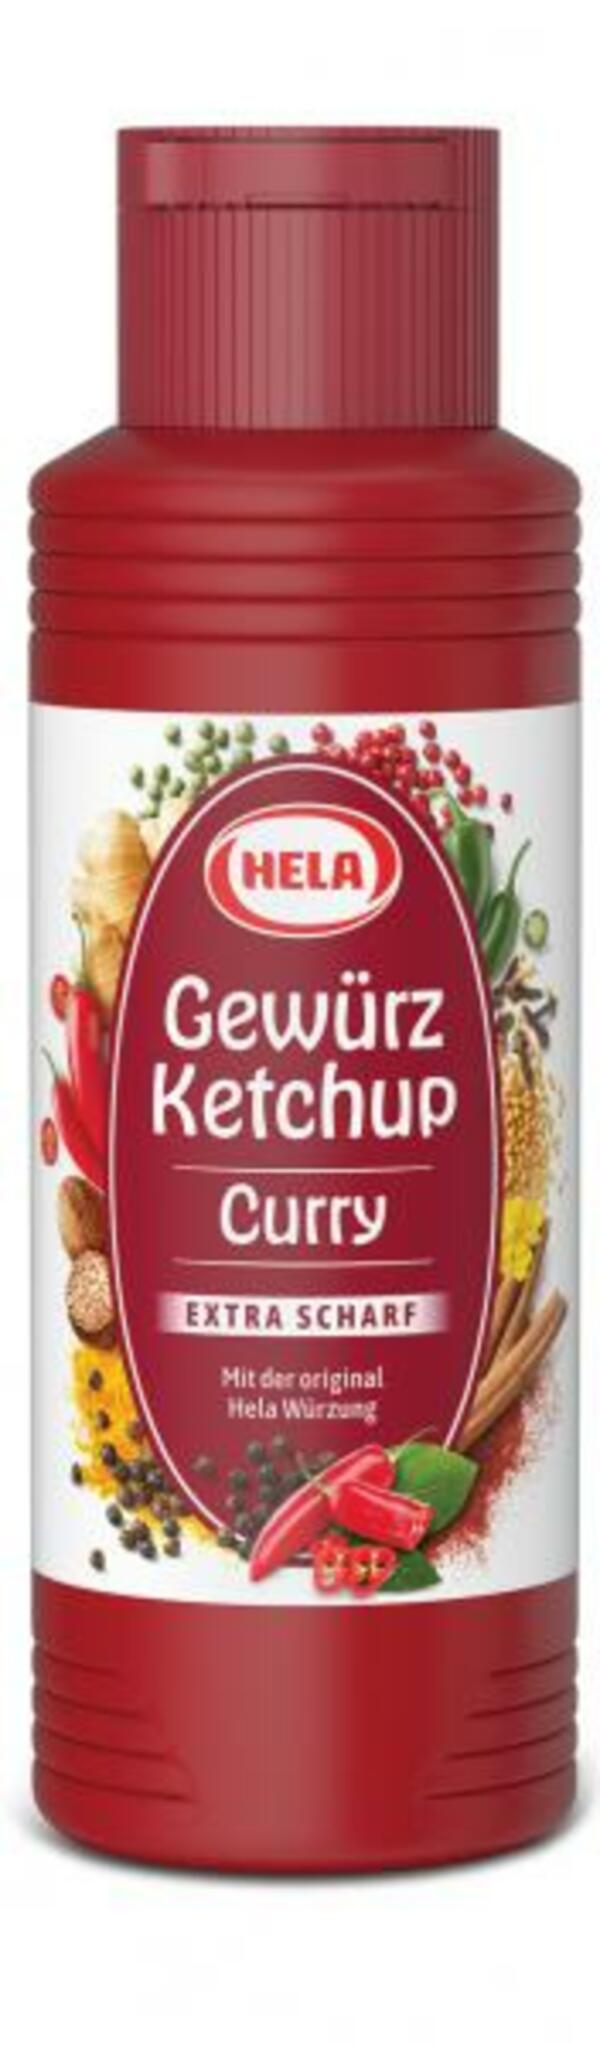 Bild 1 von Hela Gewürz Ketchup Curry Extra scharf